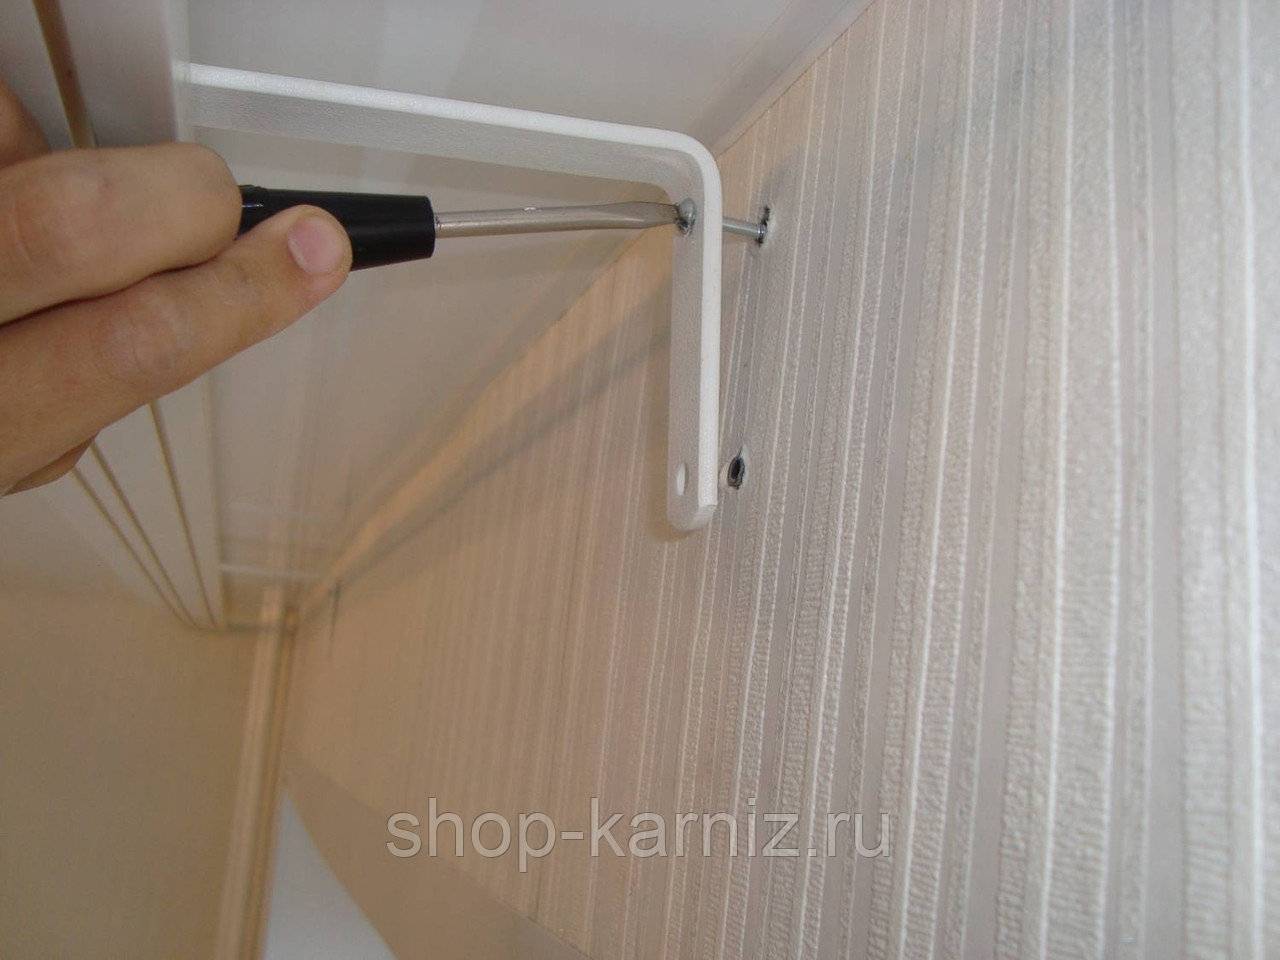 Инструкция, как повесить и прикрепить карниз для штор на стену